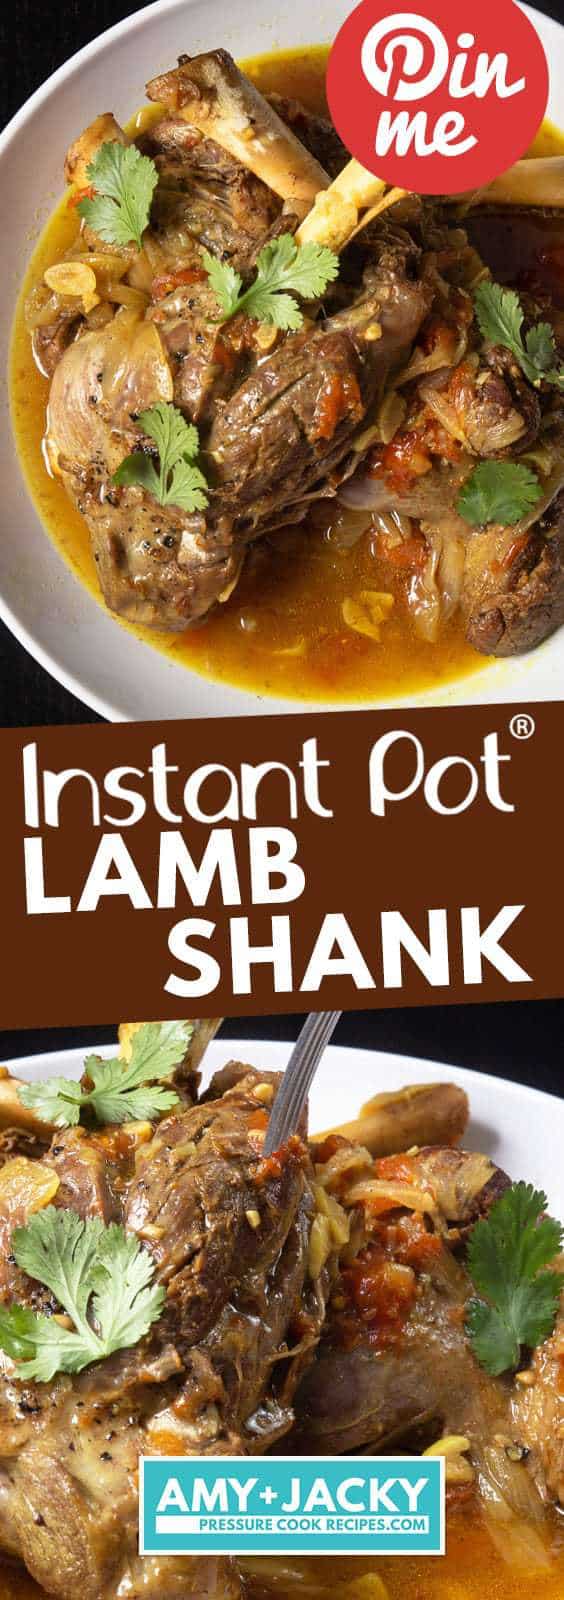 Instant Pot Lamb Shank | Pressure Cooker Lamb Shanks | How to cook lamb shanks | Lamb Shank Recipe | Instant Pot Lamb Recipes | Instant Pot Mediterranean Recipes | Healthy Instant Pot Recipes #recipes #instantpot #lamb #easy #healthy